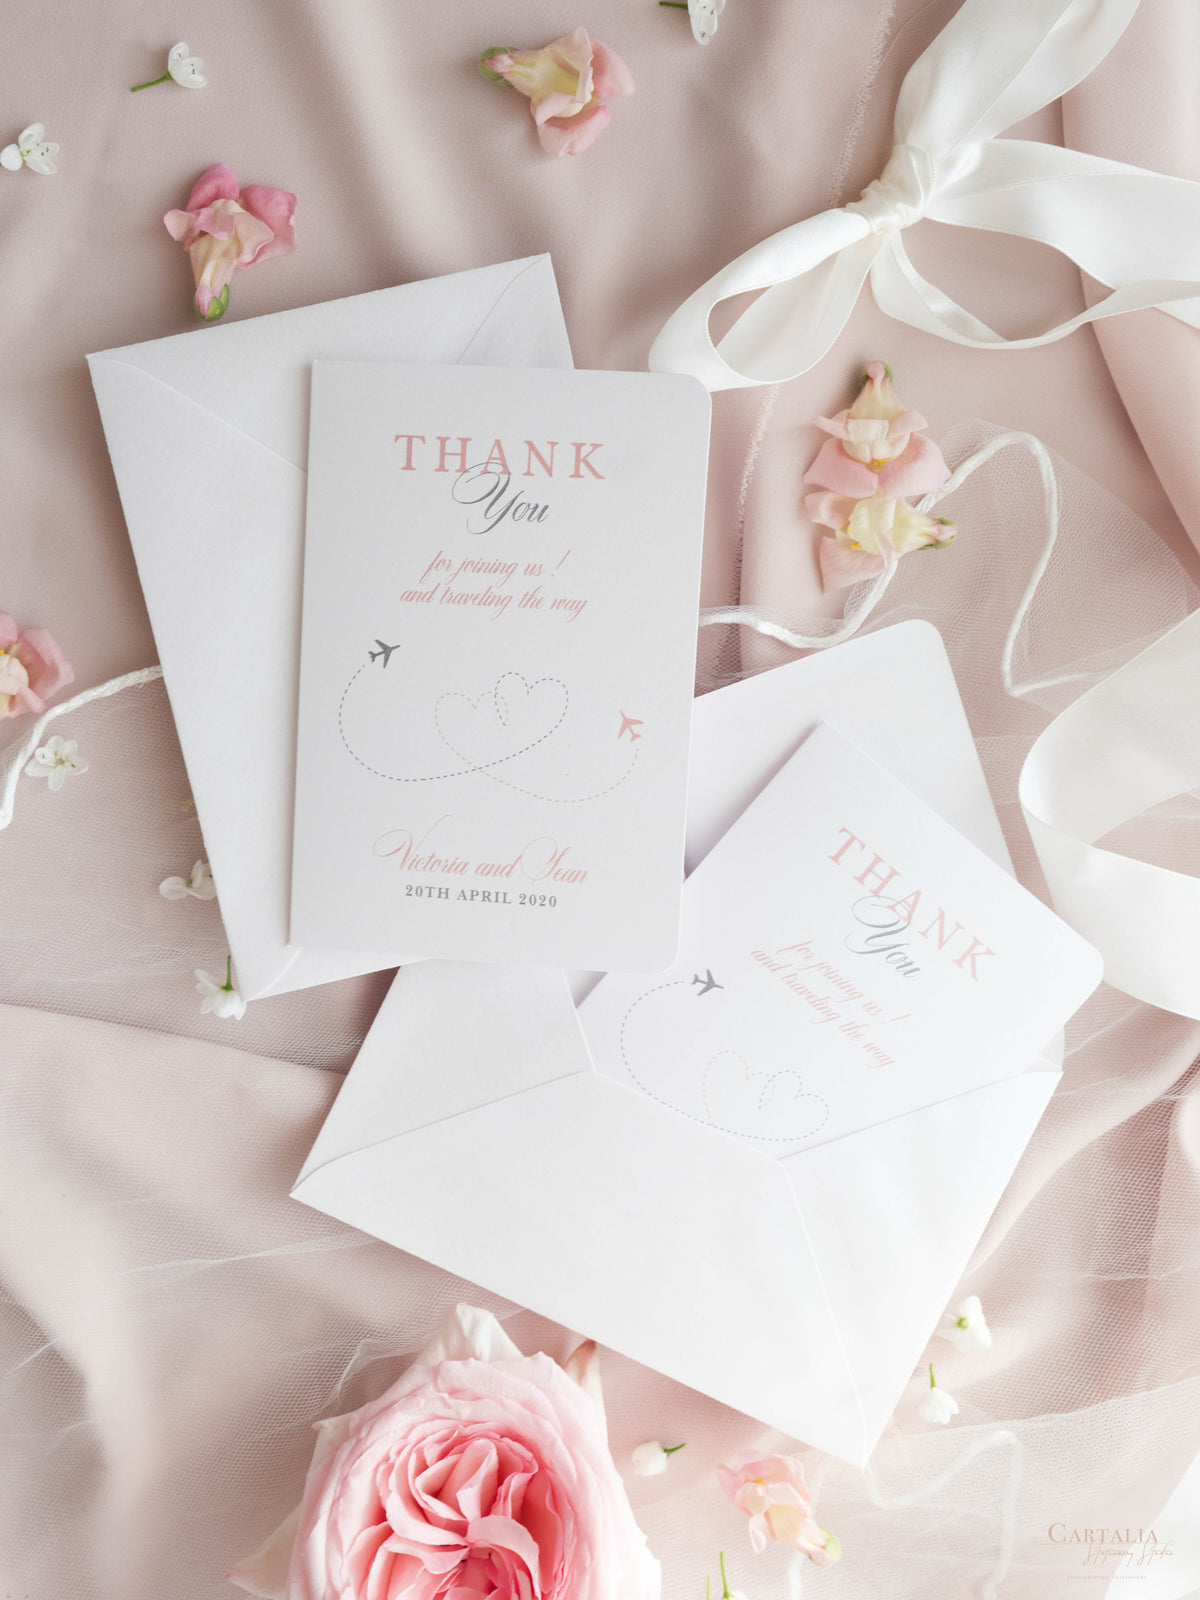 Tarjetas de agradecimiento con mensaje propio: invitación de boda con pasaporte a juego